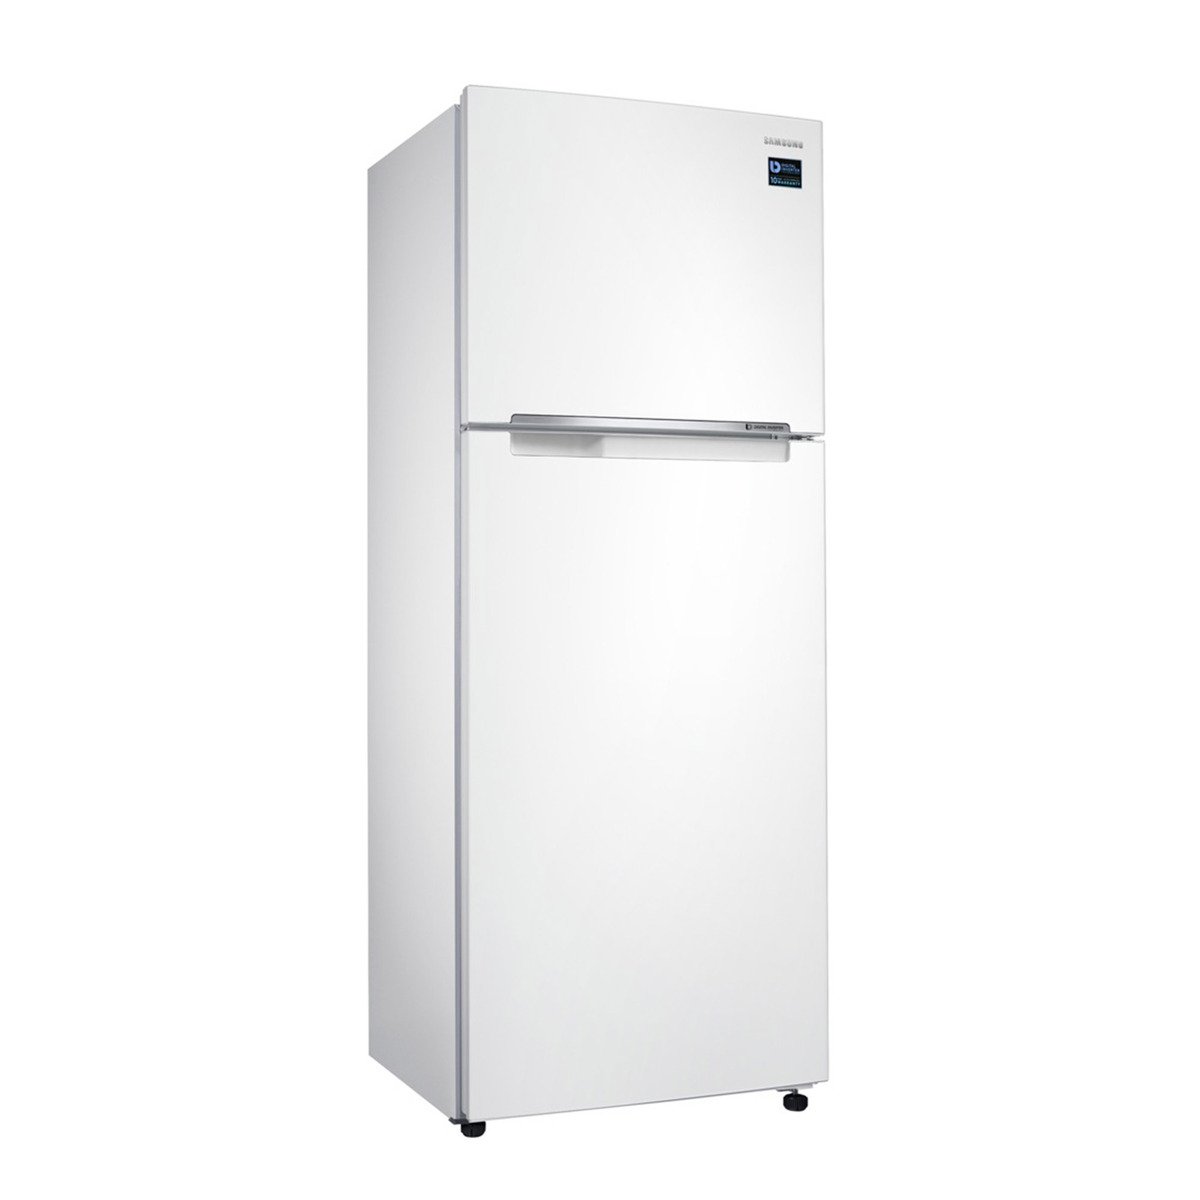 Samsung Double Door Refrigerator RT45K5000WW 450Ltr